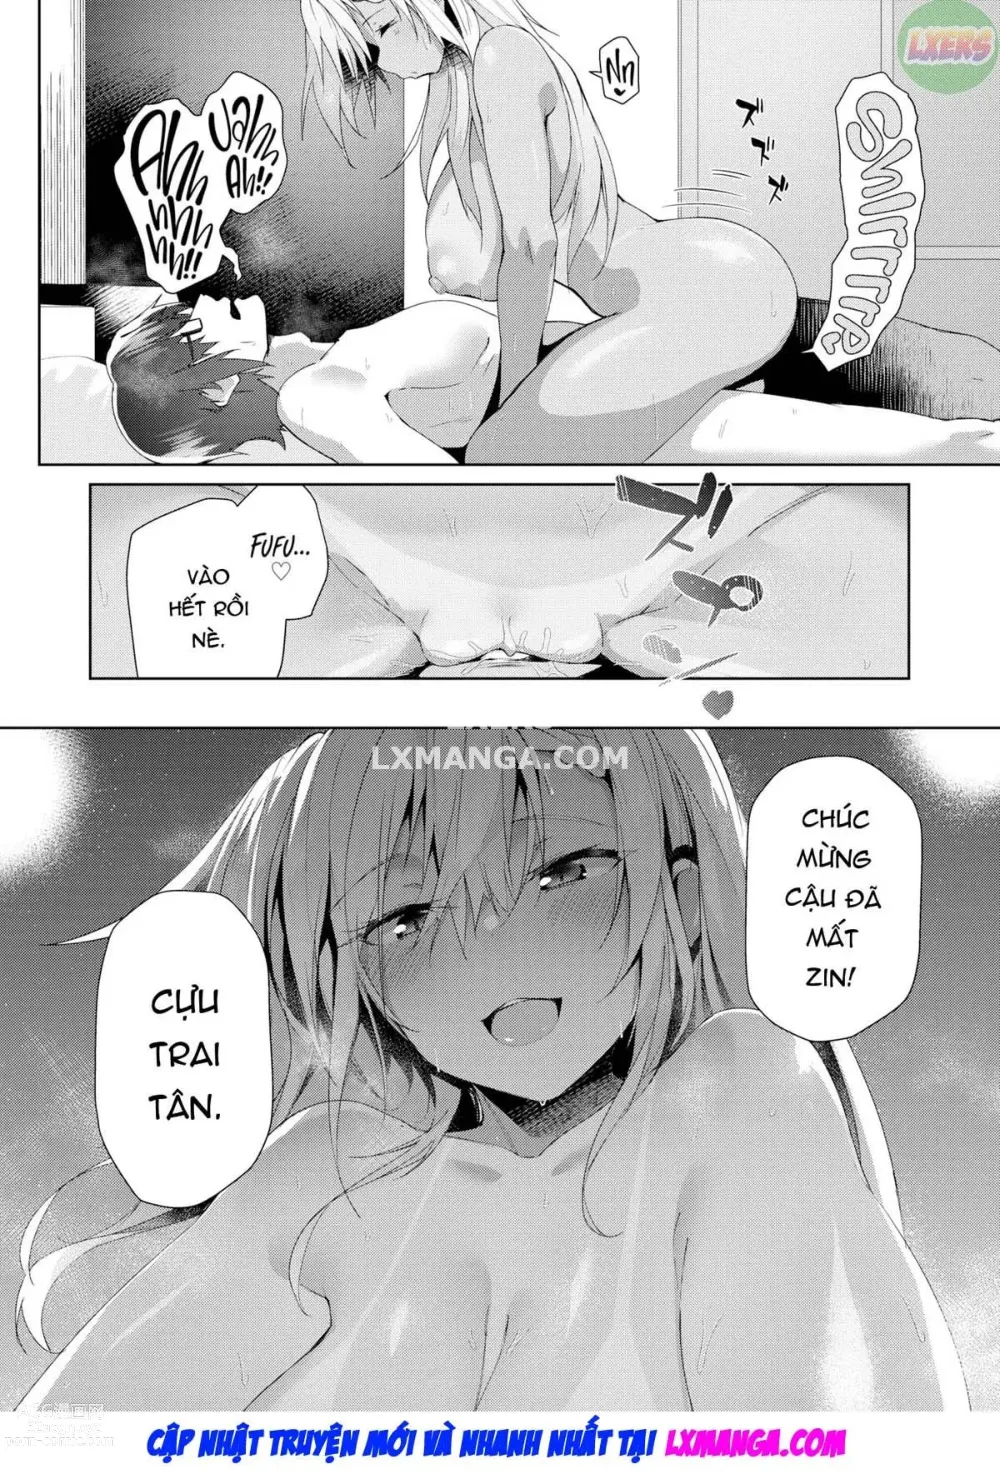 Page 19 of doujinshi Chỉ có thể bị cuốn hút